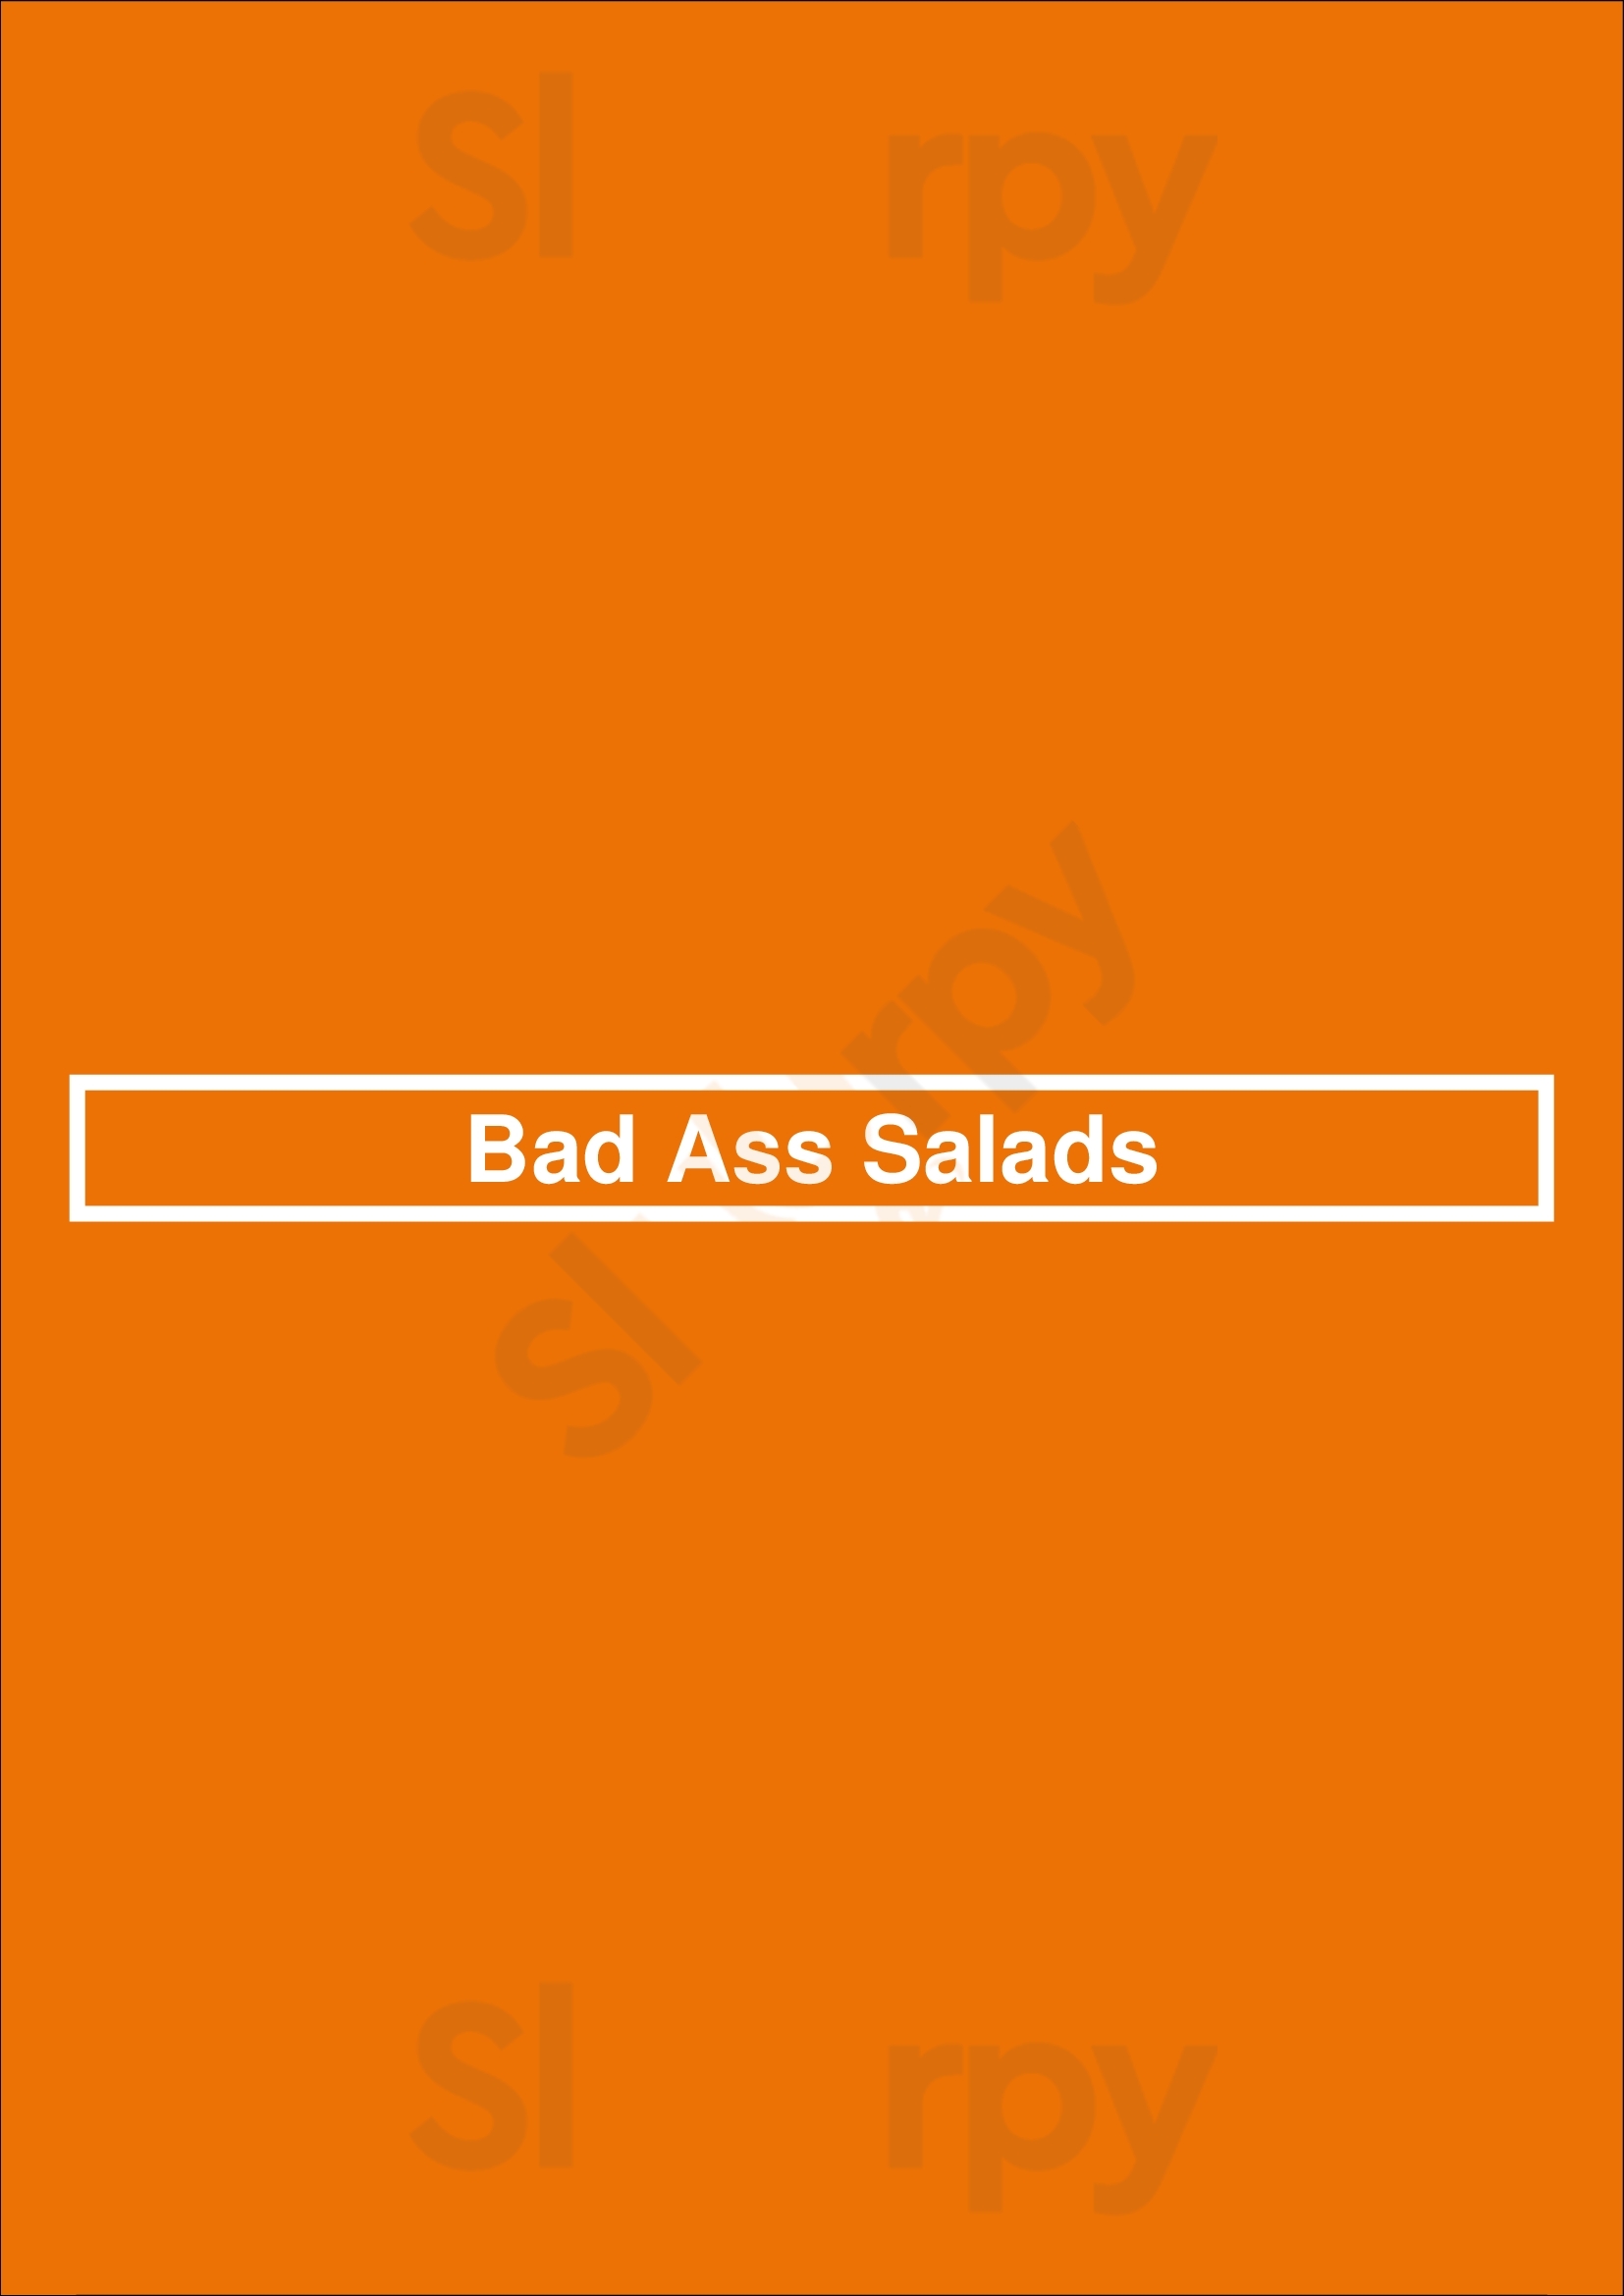 Bad Ass Salads Los Angeles Menu - 1